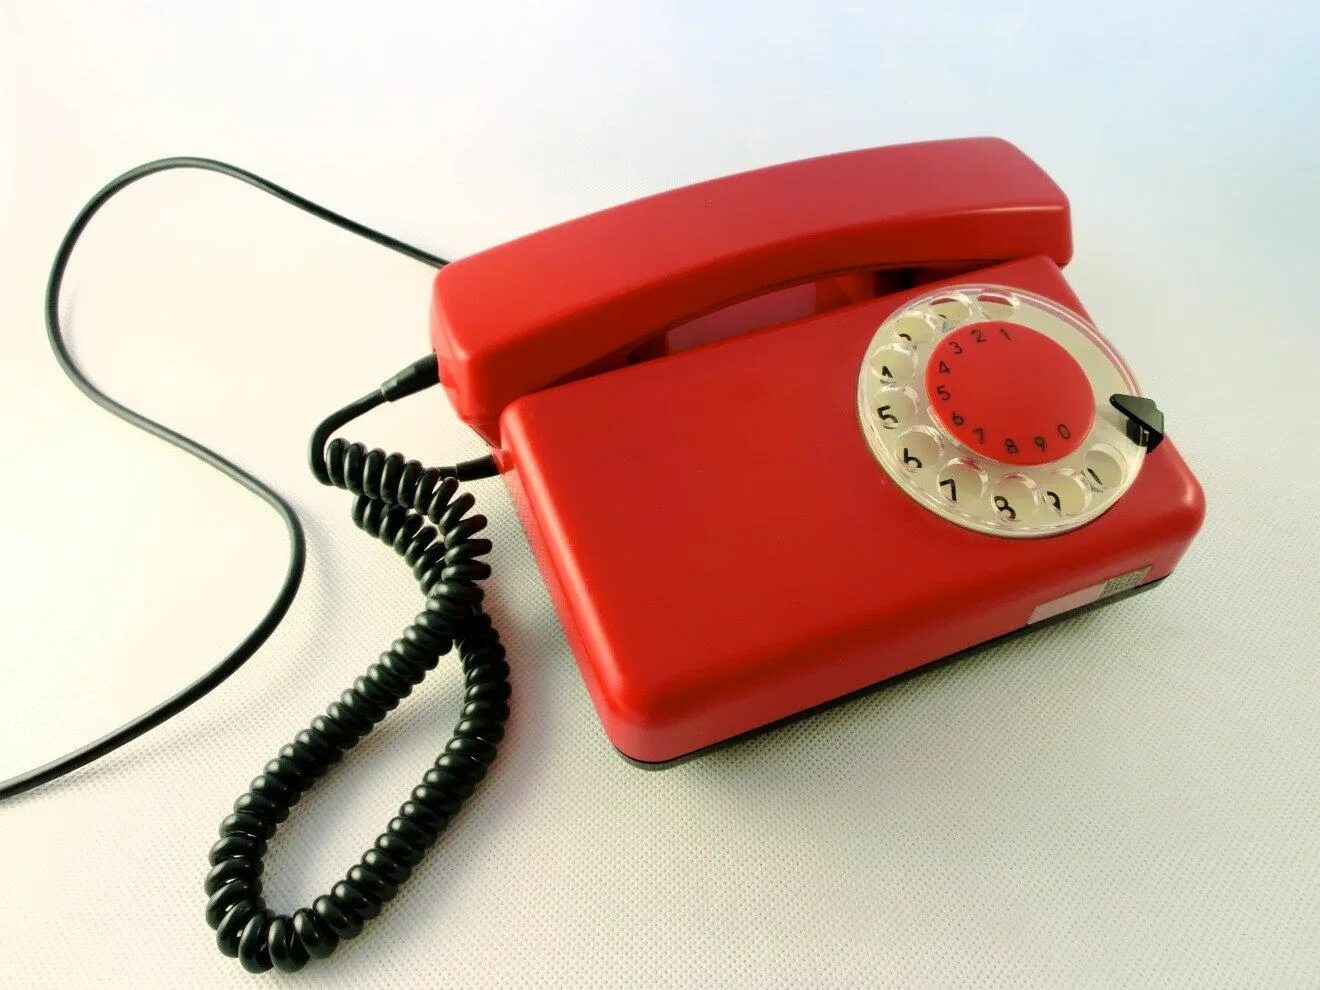 Ооо красный телефон. Красный стационарный телефон. Красный домашний телефон. Старая телефонная трубка красная. Красный старый телефон домашний.